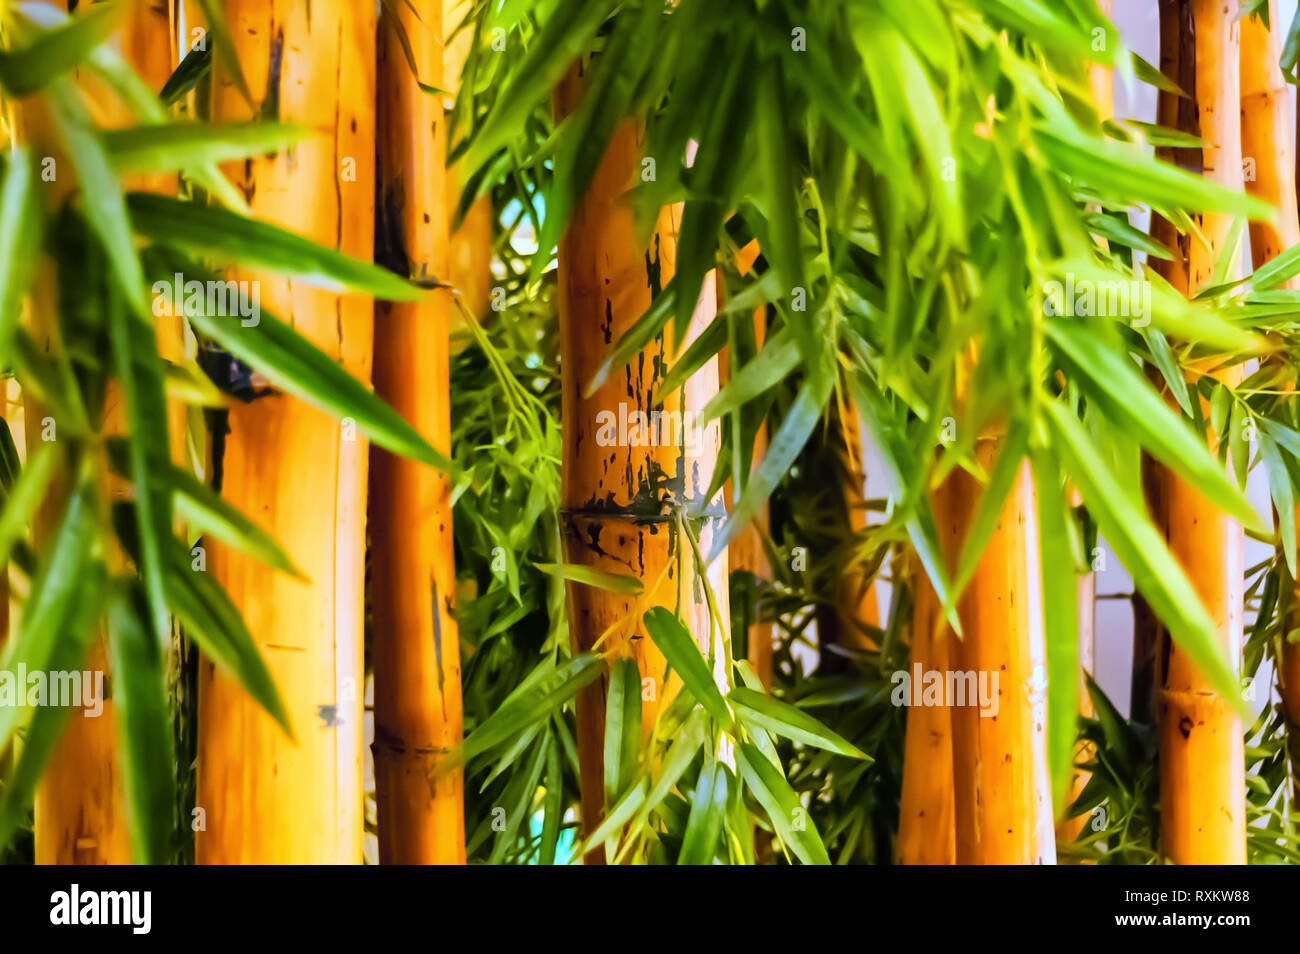 Eine Nahaufnahme Schuß von Bambus Pflanzen/Bambus Halme mit üppigen grünen Blätter in einen Indoor Bamboo Garden gewachsen die Ästhetik des Ortes zu verbessern. Stockfoto